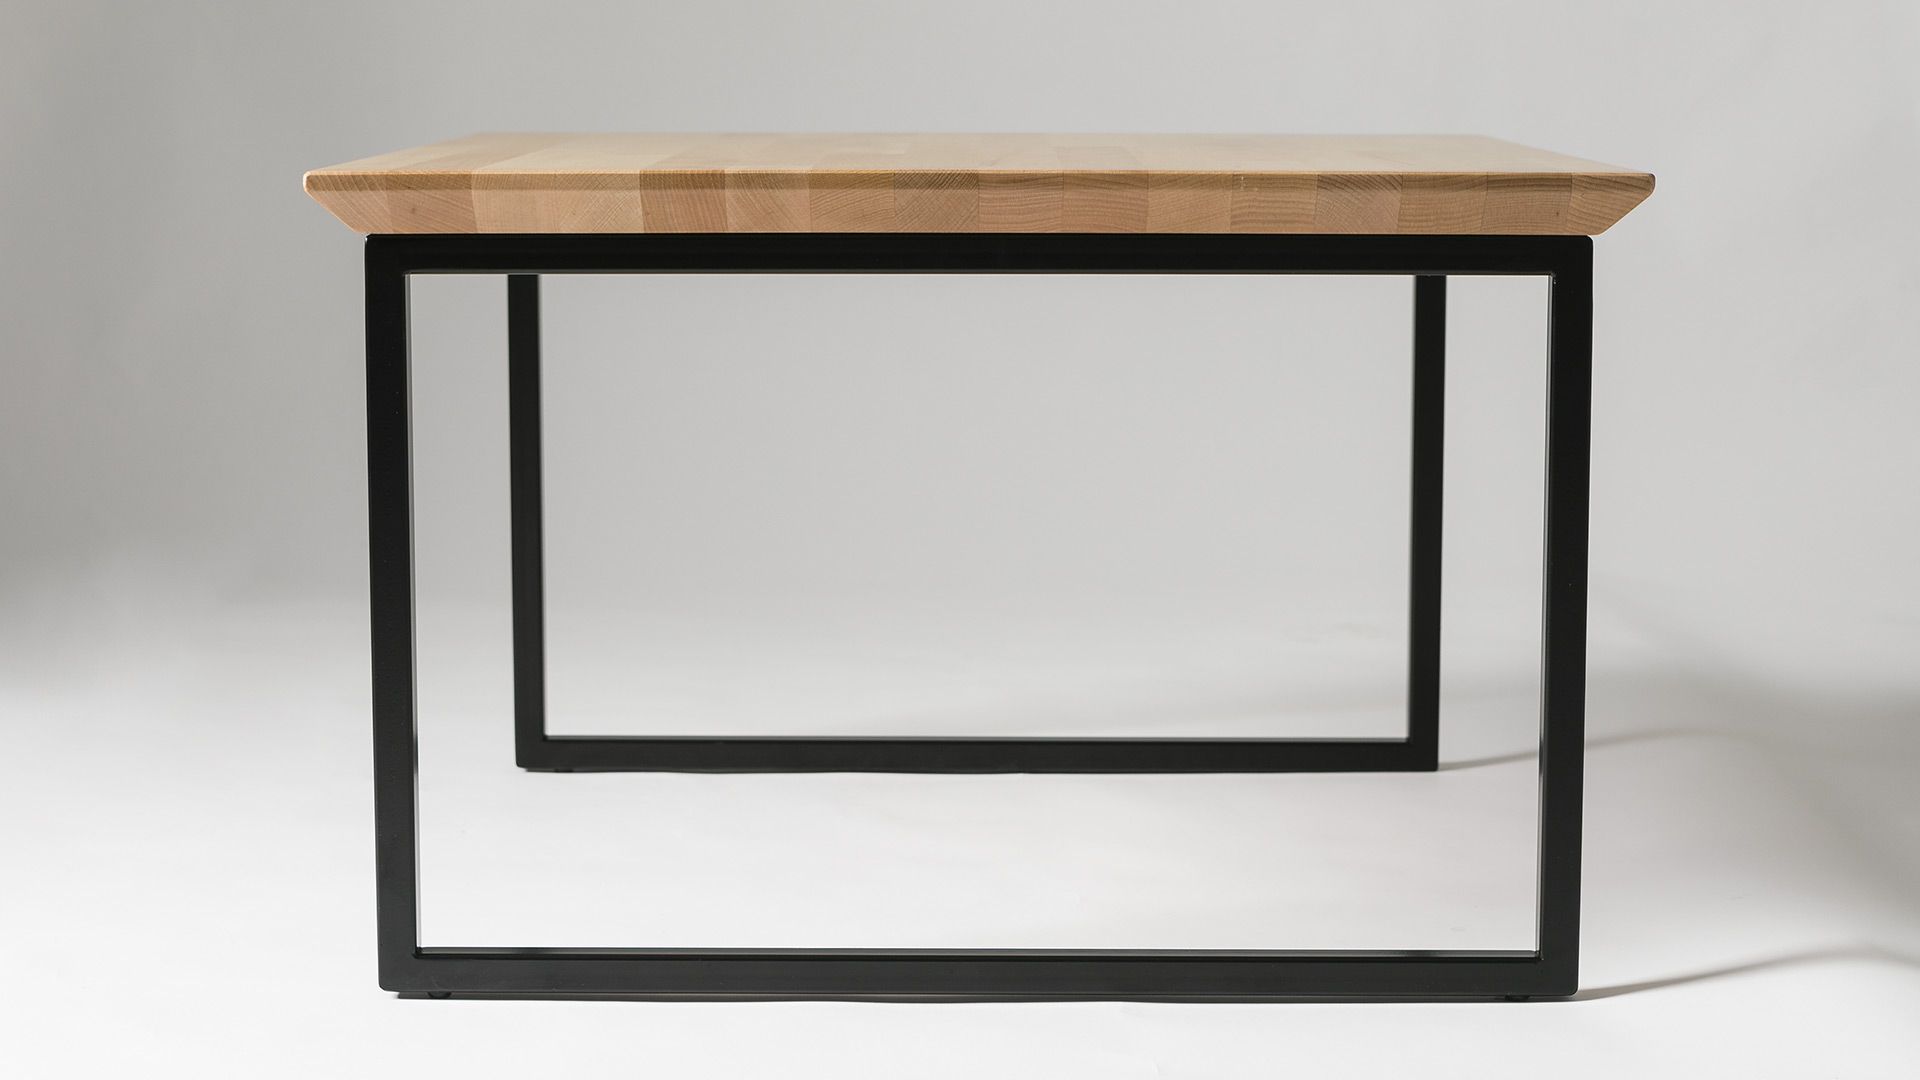 Tavolo di legno Kube artigianale di design per ufficio Environment ambiente Moschella